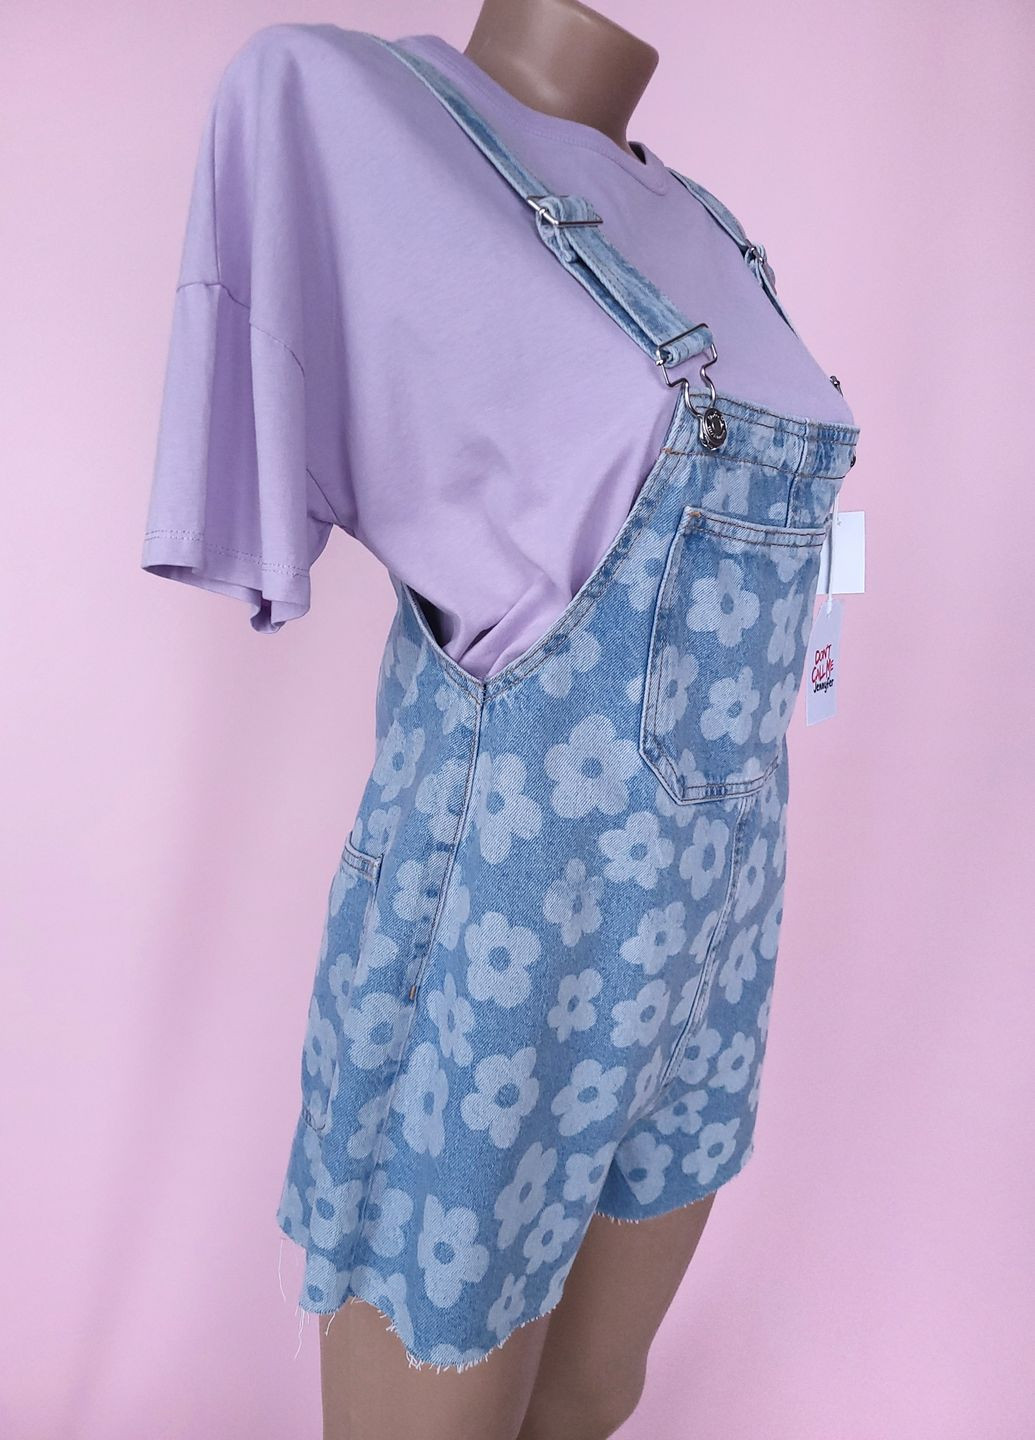 Комбинезон женский джинсовый в цветы Jennyfer комбинезон-шорты цветочный голубой